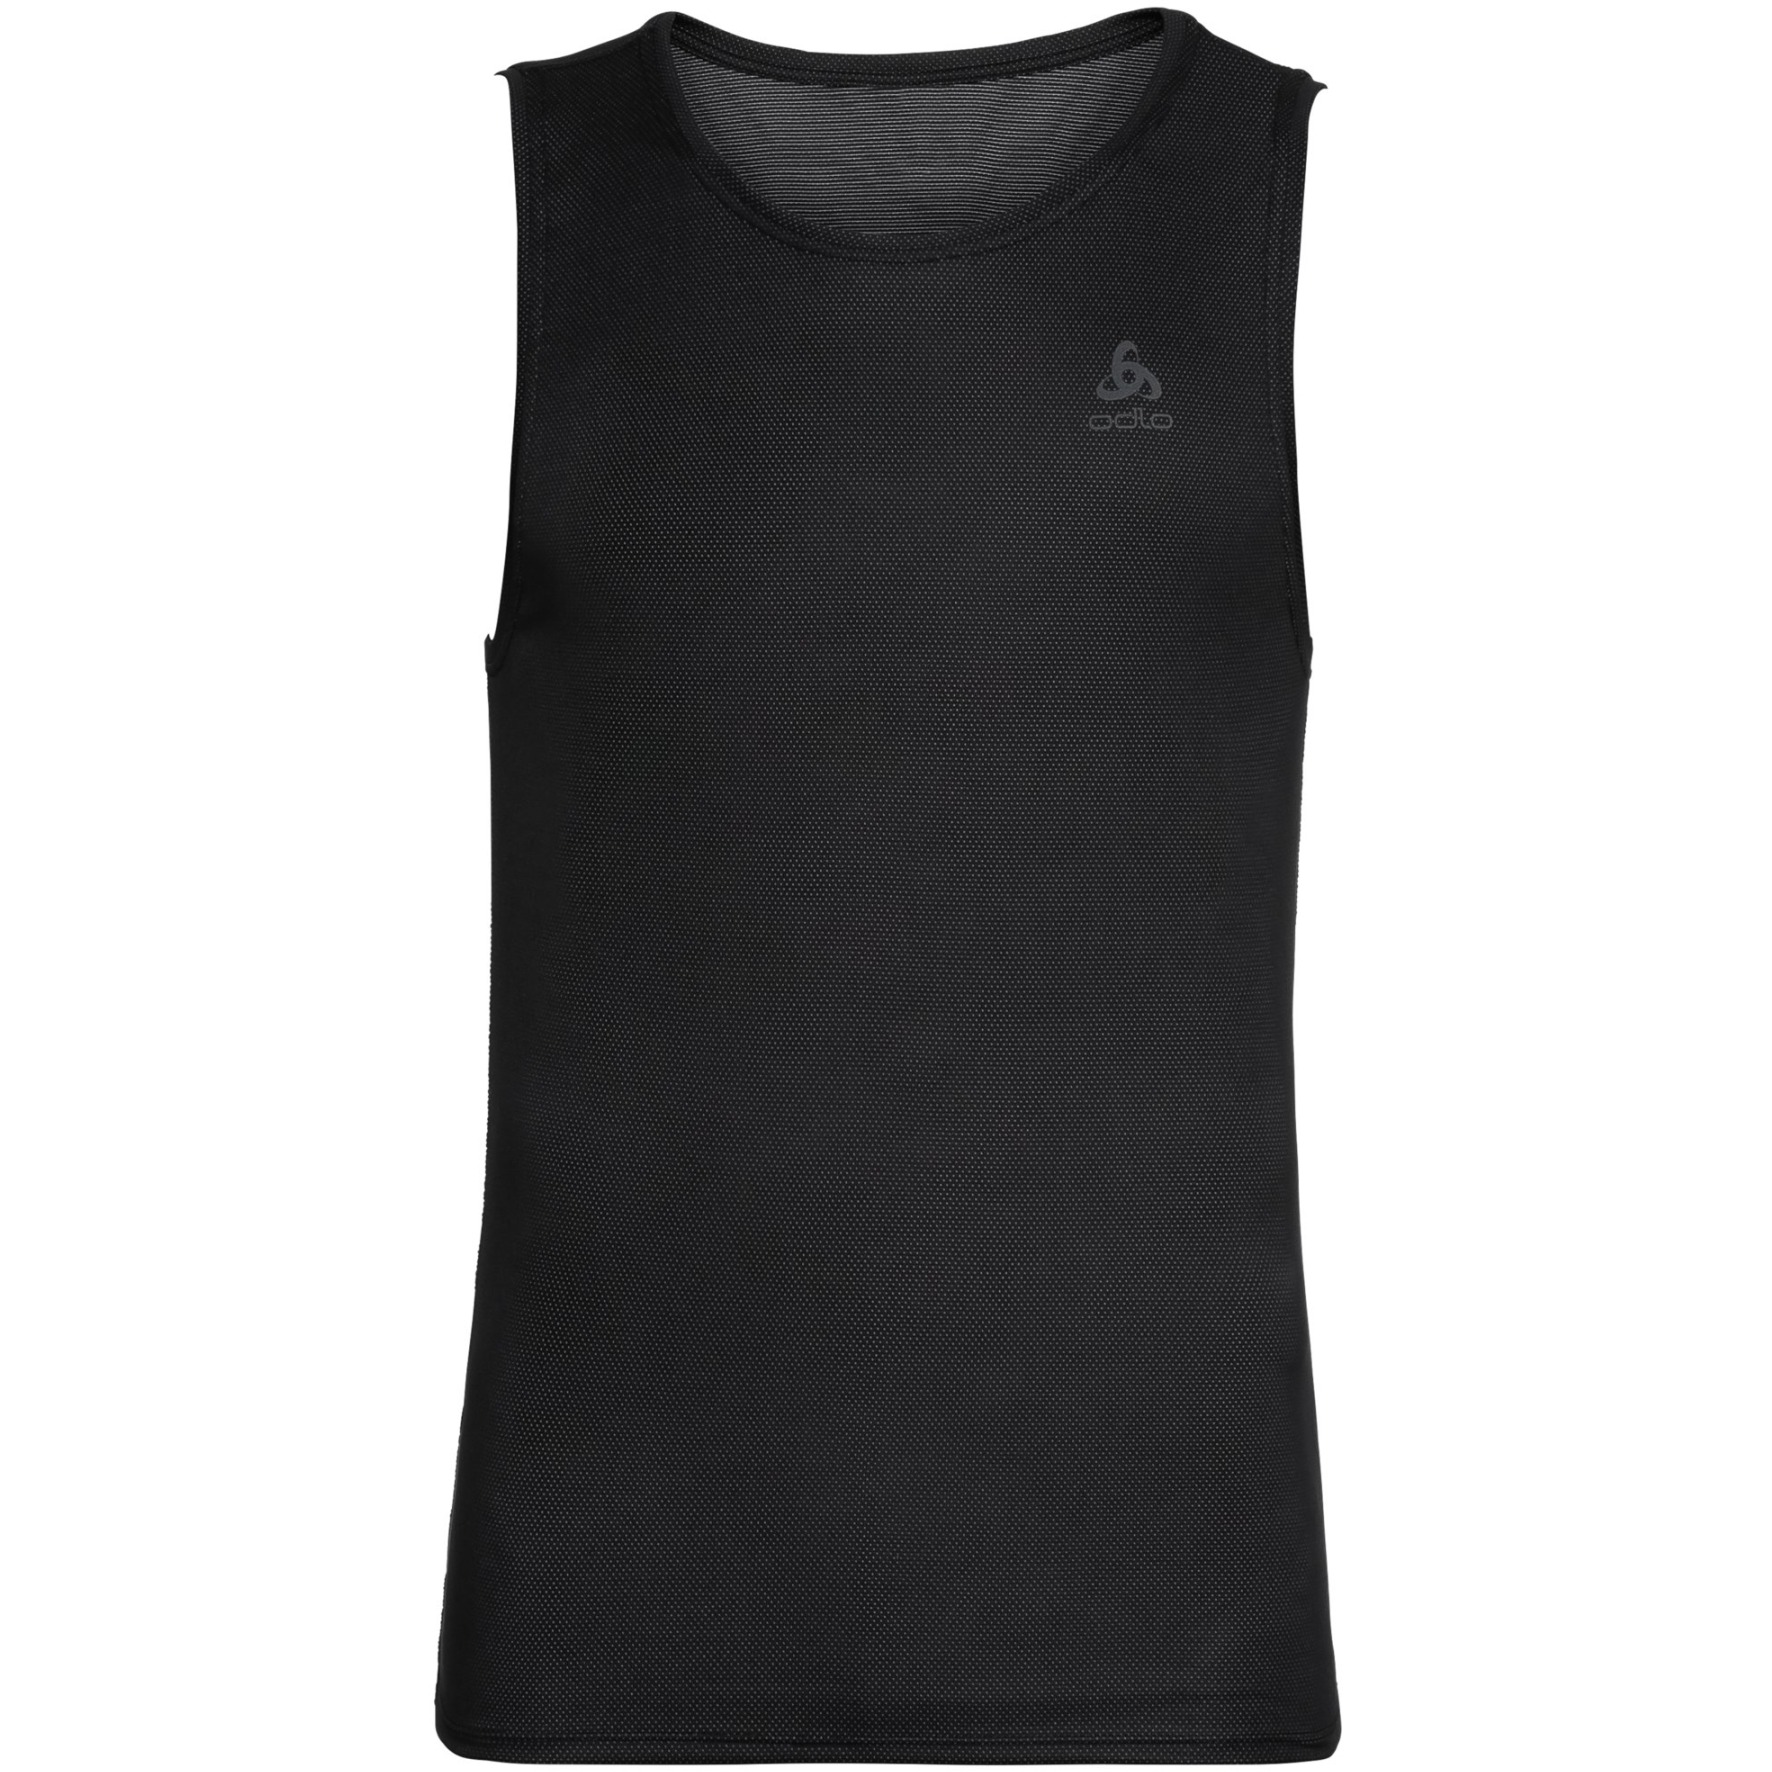 Produktbild von Odlo Active F-Dry Light Ärmelloses Unterhemd Herren - schwarz